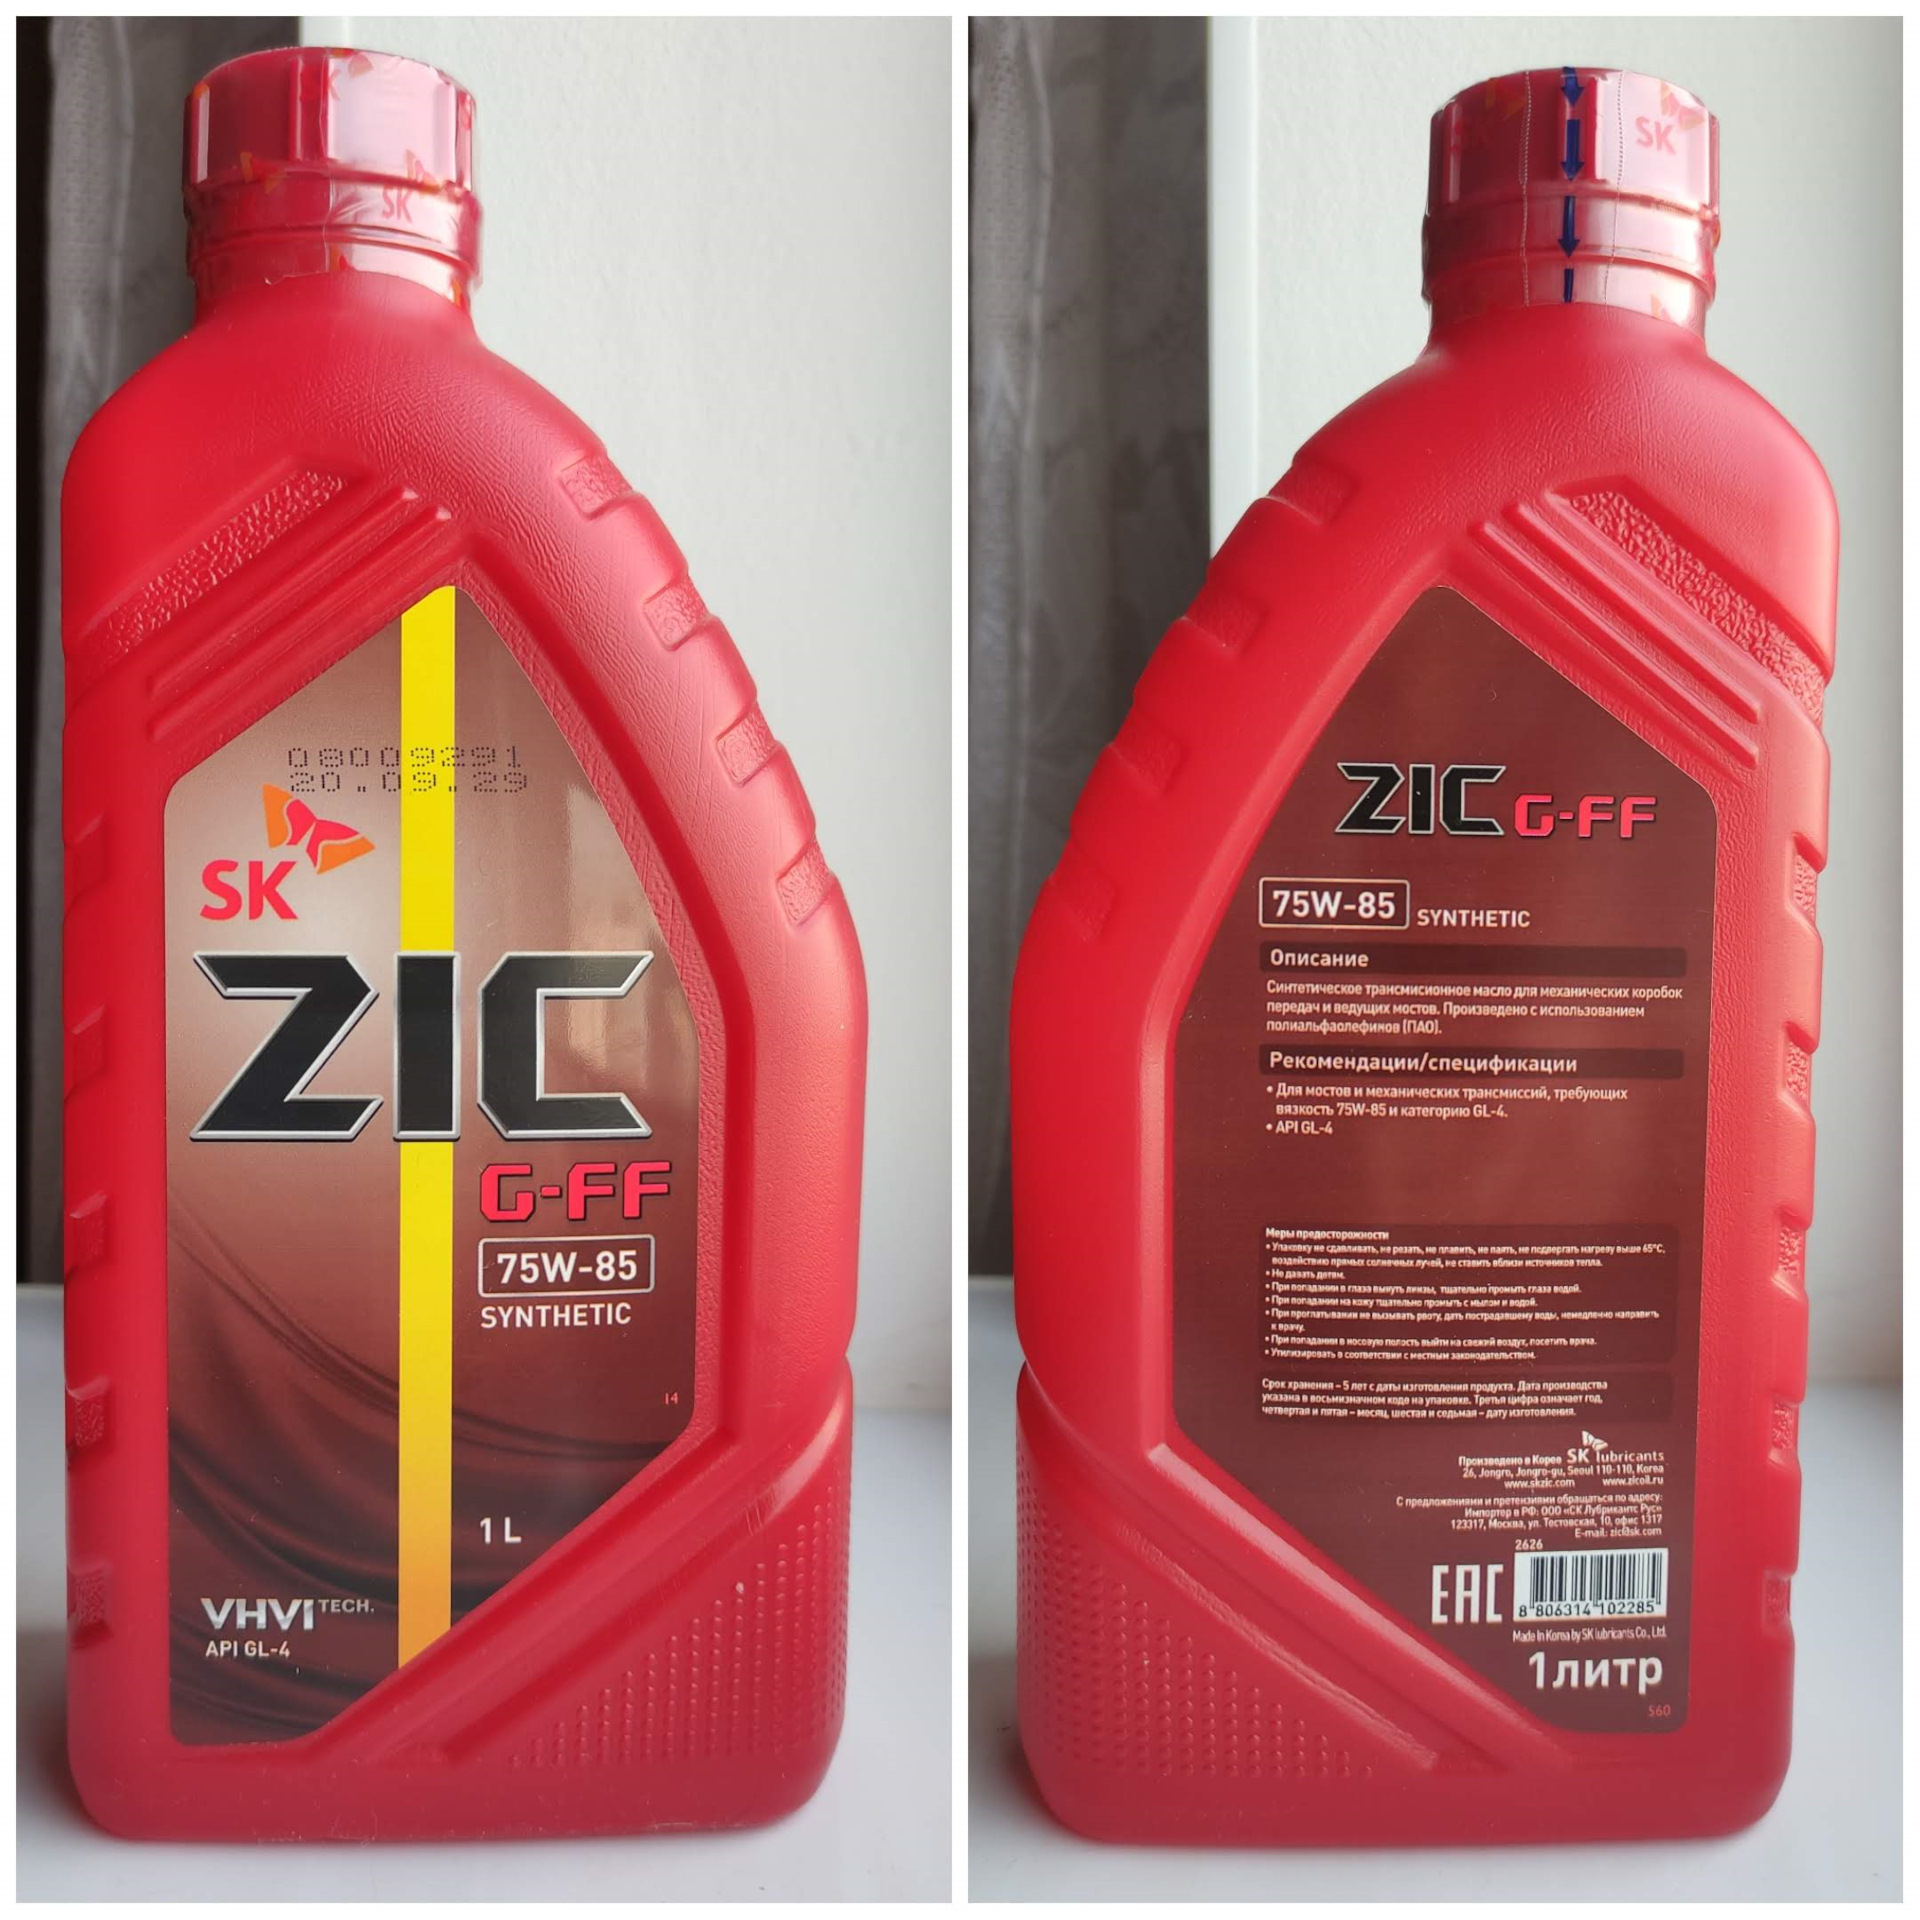 Трансмиссионные масла zic синтетика. Масло трансмиссионное 75w90 ZIC. Зик трансмиссионное масло 75w90. Масло зик 75w85 синтетика. ZIC G-FF 75w-85.